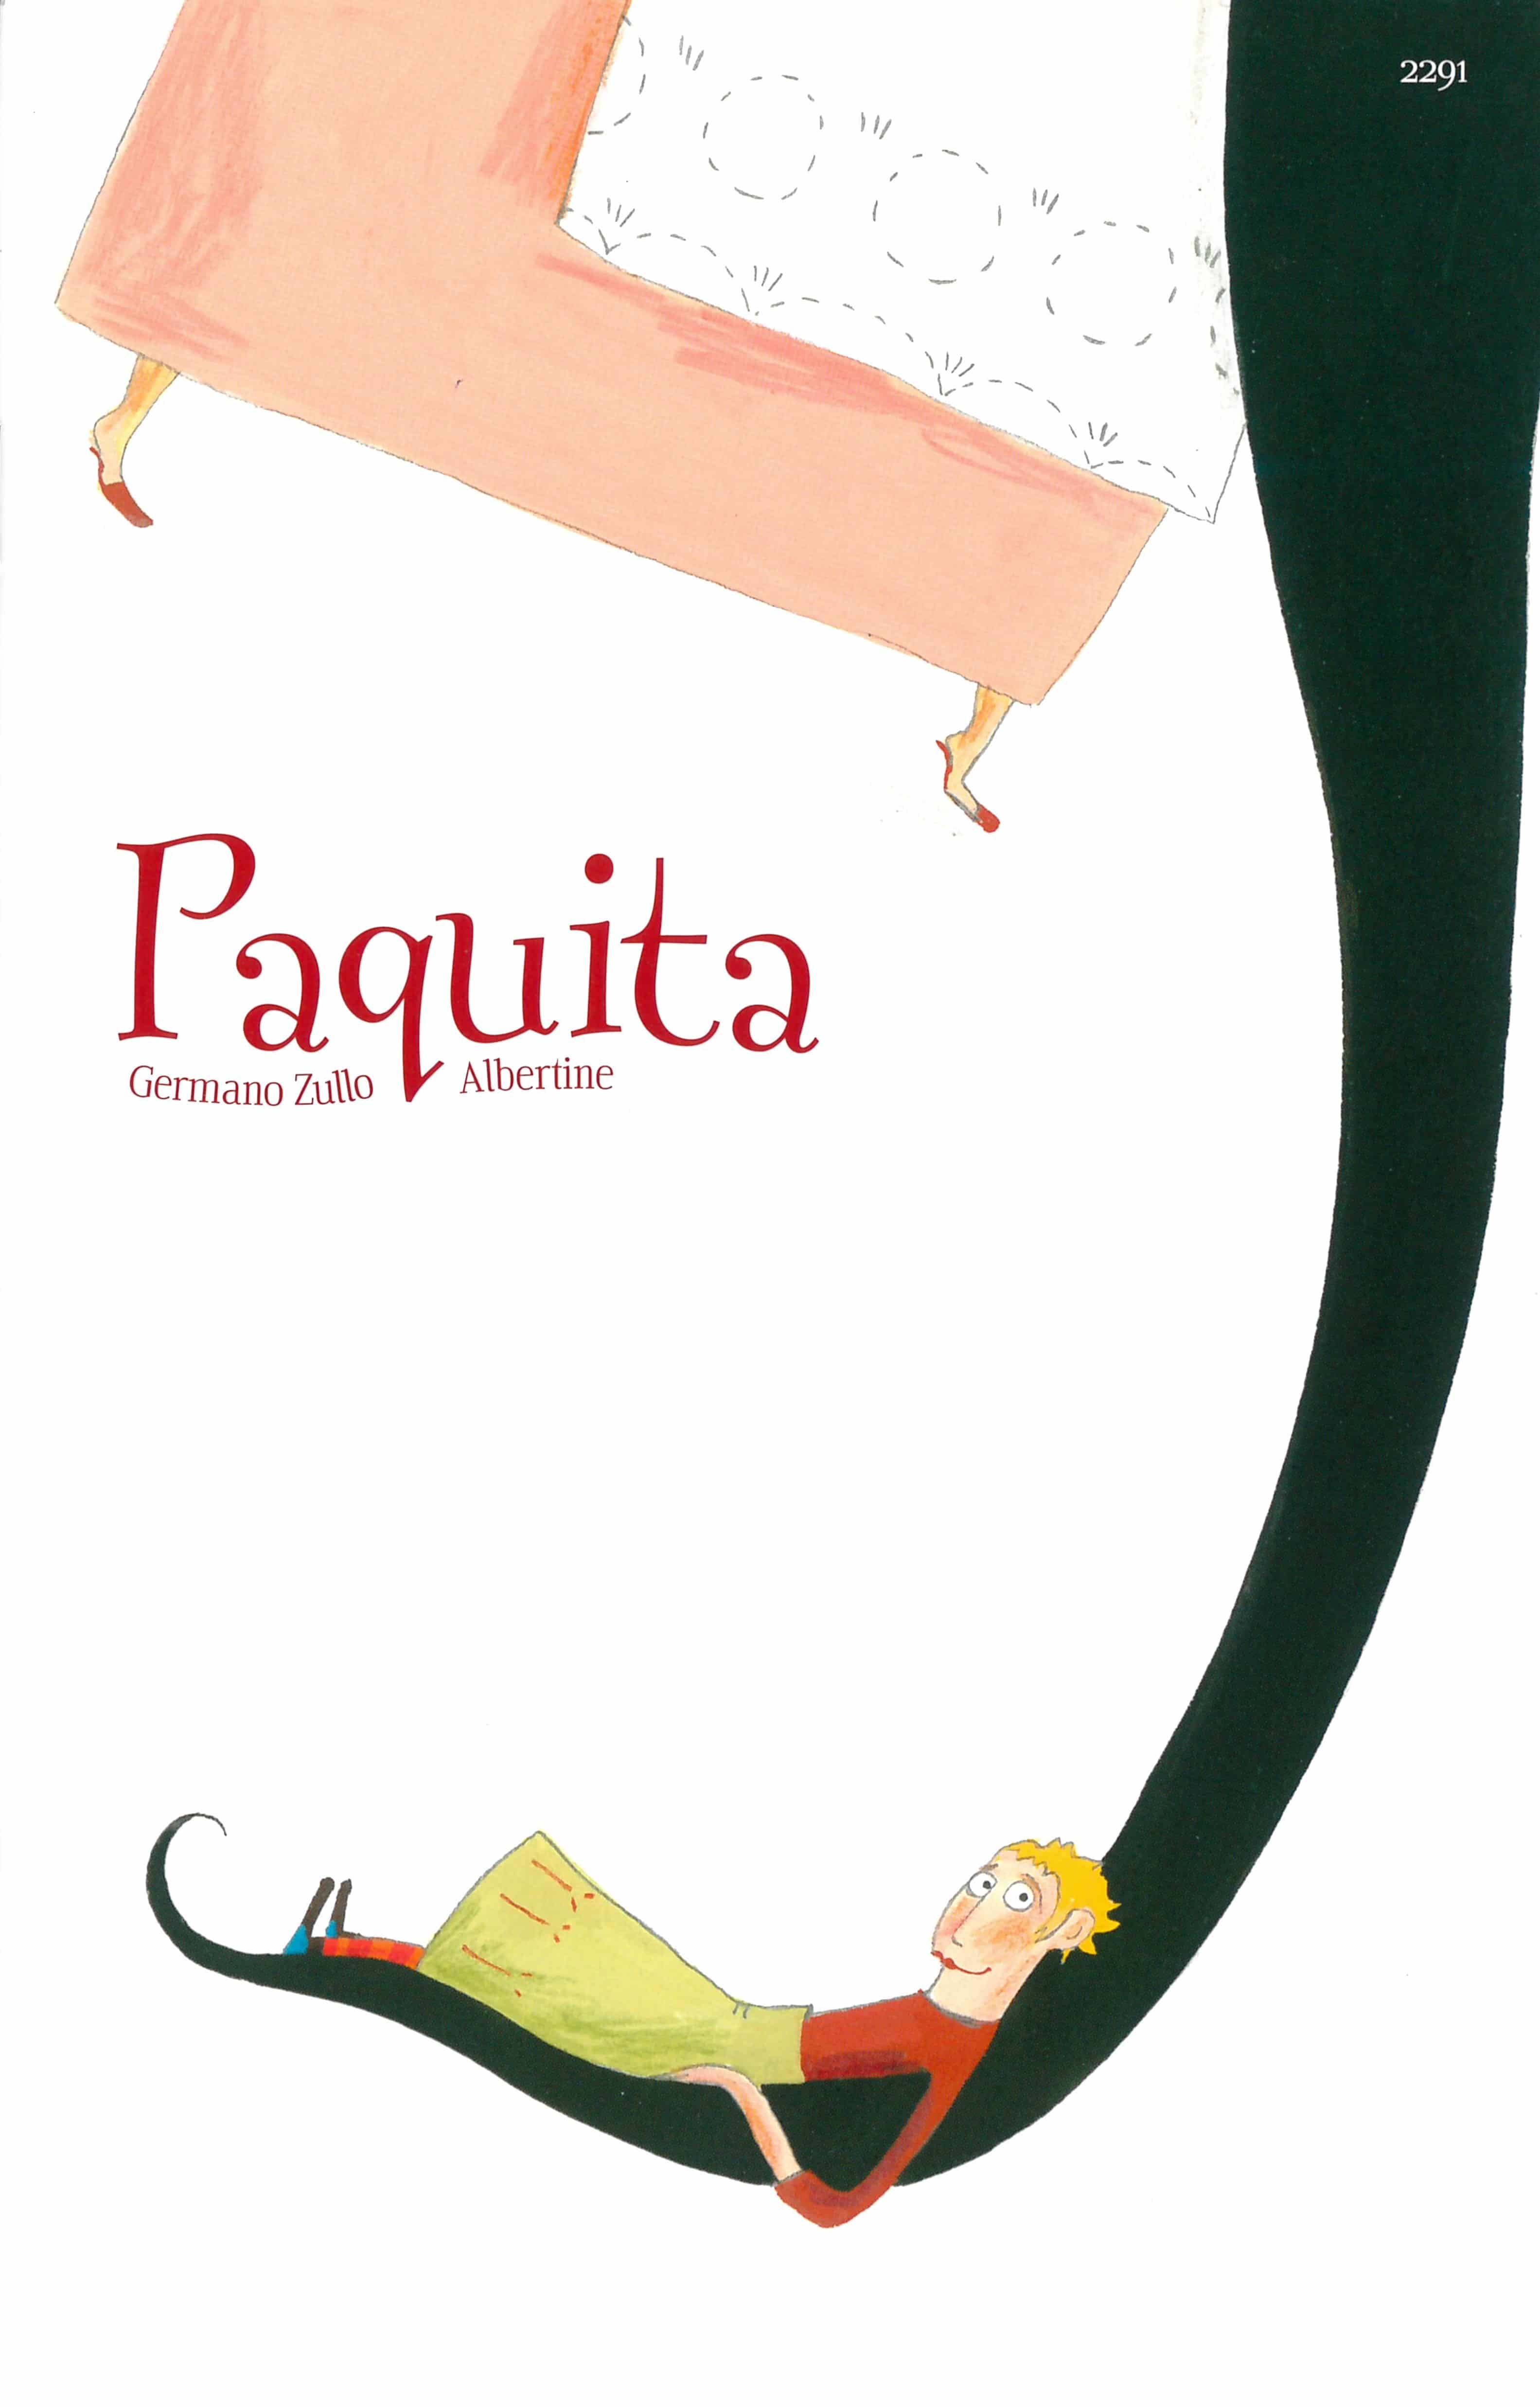 Paquita, ein Kinderbuch von Germano Zullo, Illustration von Albertine, SJW Verlag, Kinderbuchklassiker, Vallader